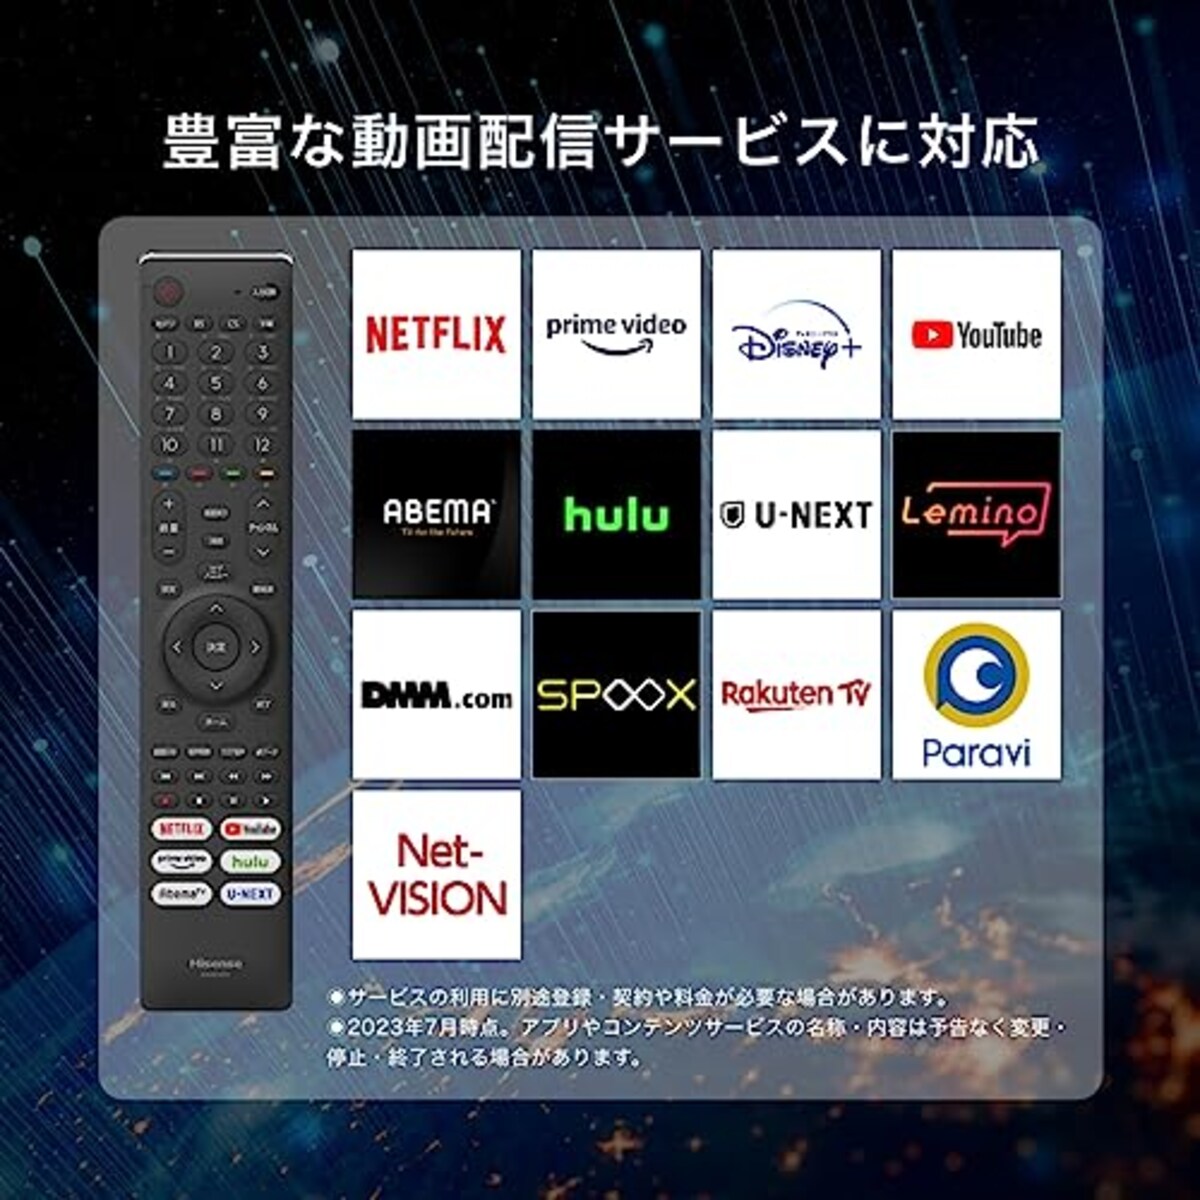  ハイセンス 24V型 ハイビジョン 液晶 テレビ 24A40H ネット動画対応 VAパネル 3年保証 2022年モデル ブラック画像4 